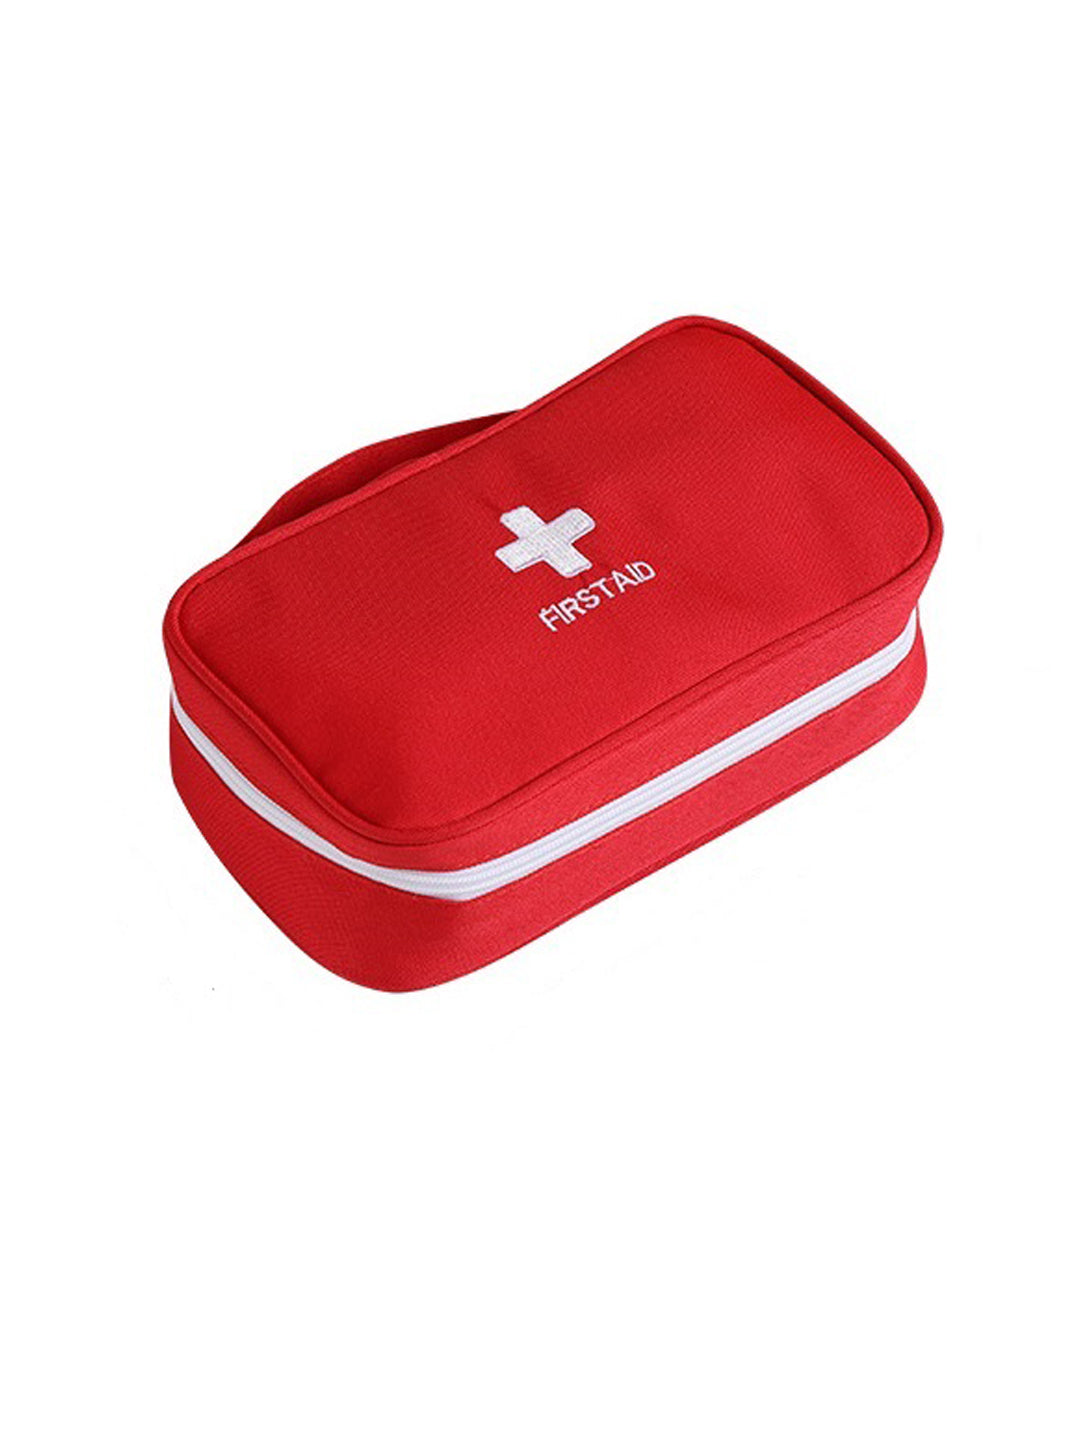 VON CASA Rectangular Polyester First Aid Box - Red